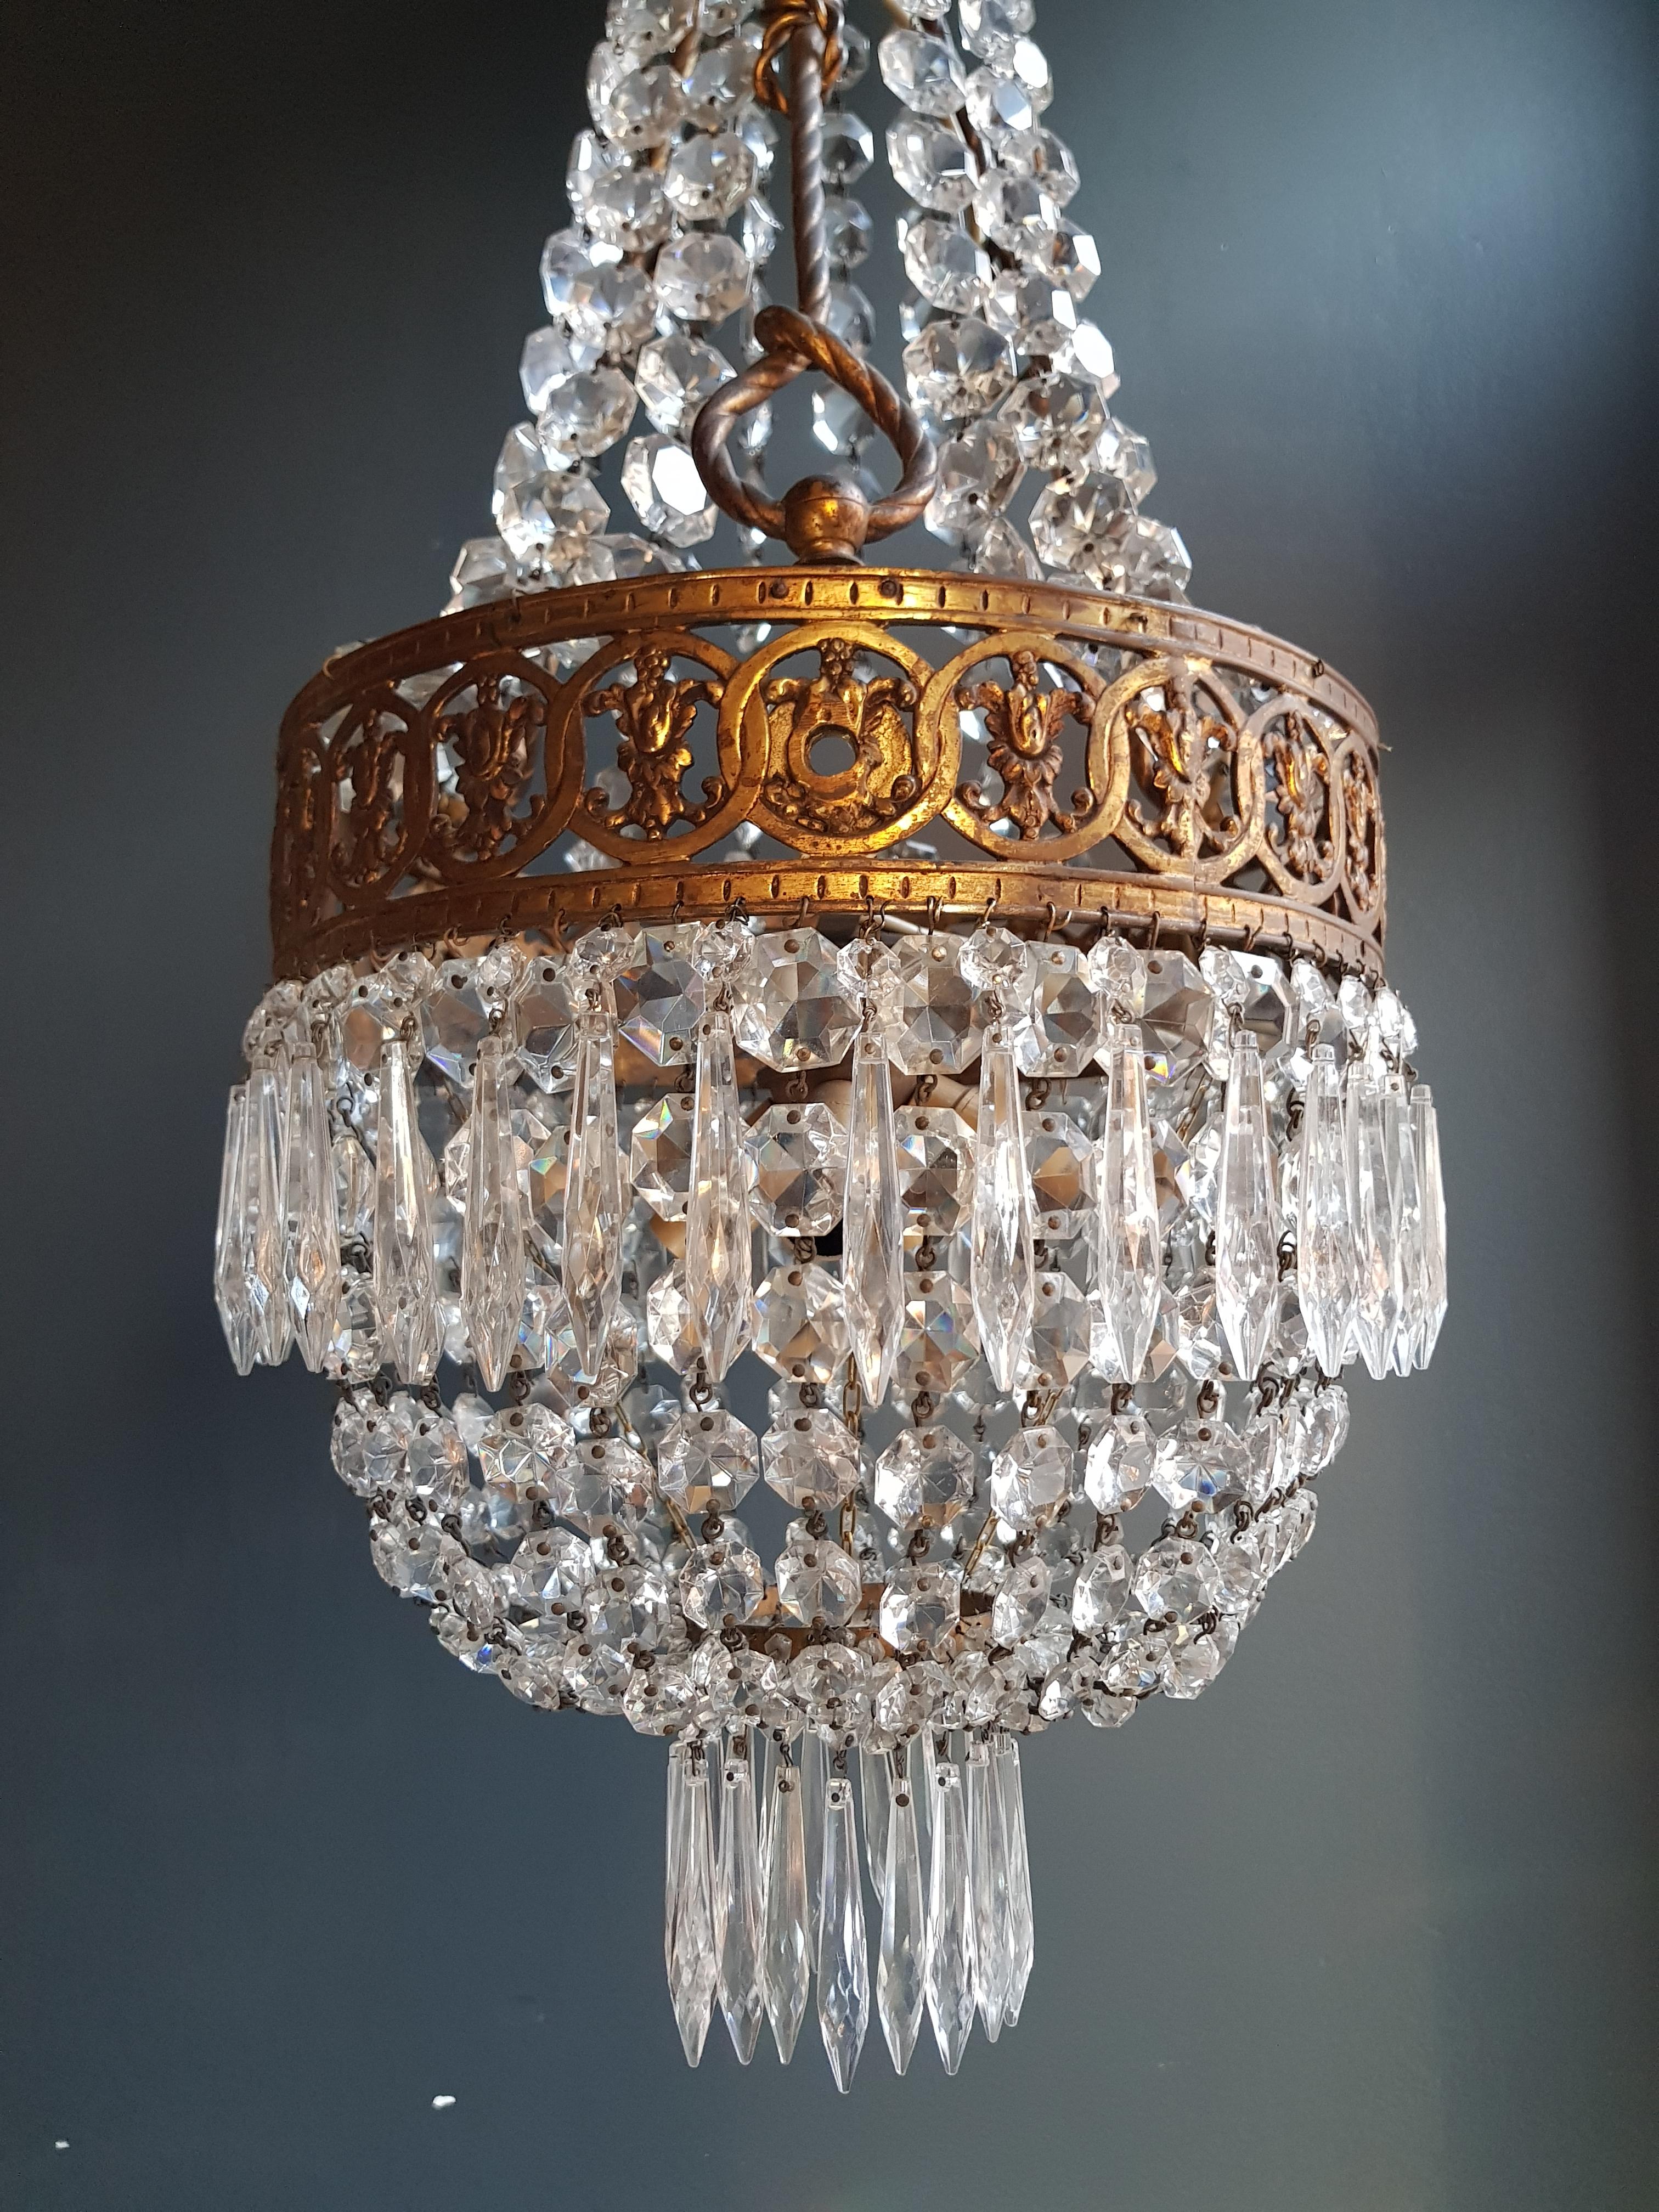 Mid-20th Century Basket Chandelier Brass Empire Crystal Lustre Ceiling Antique Art Nouveau For Sale